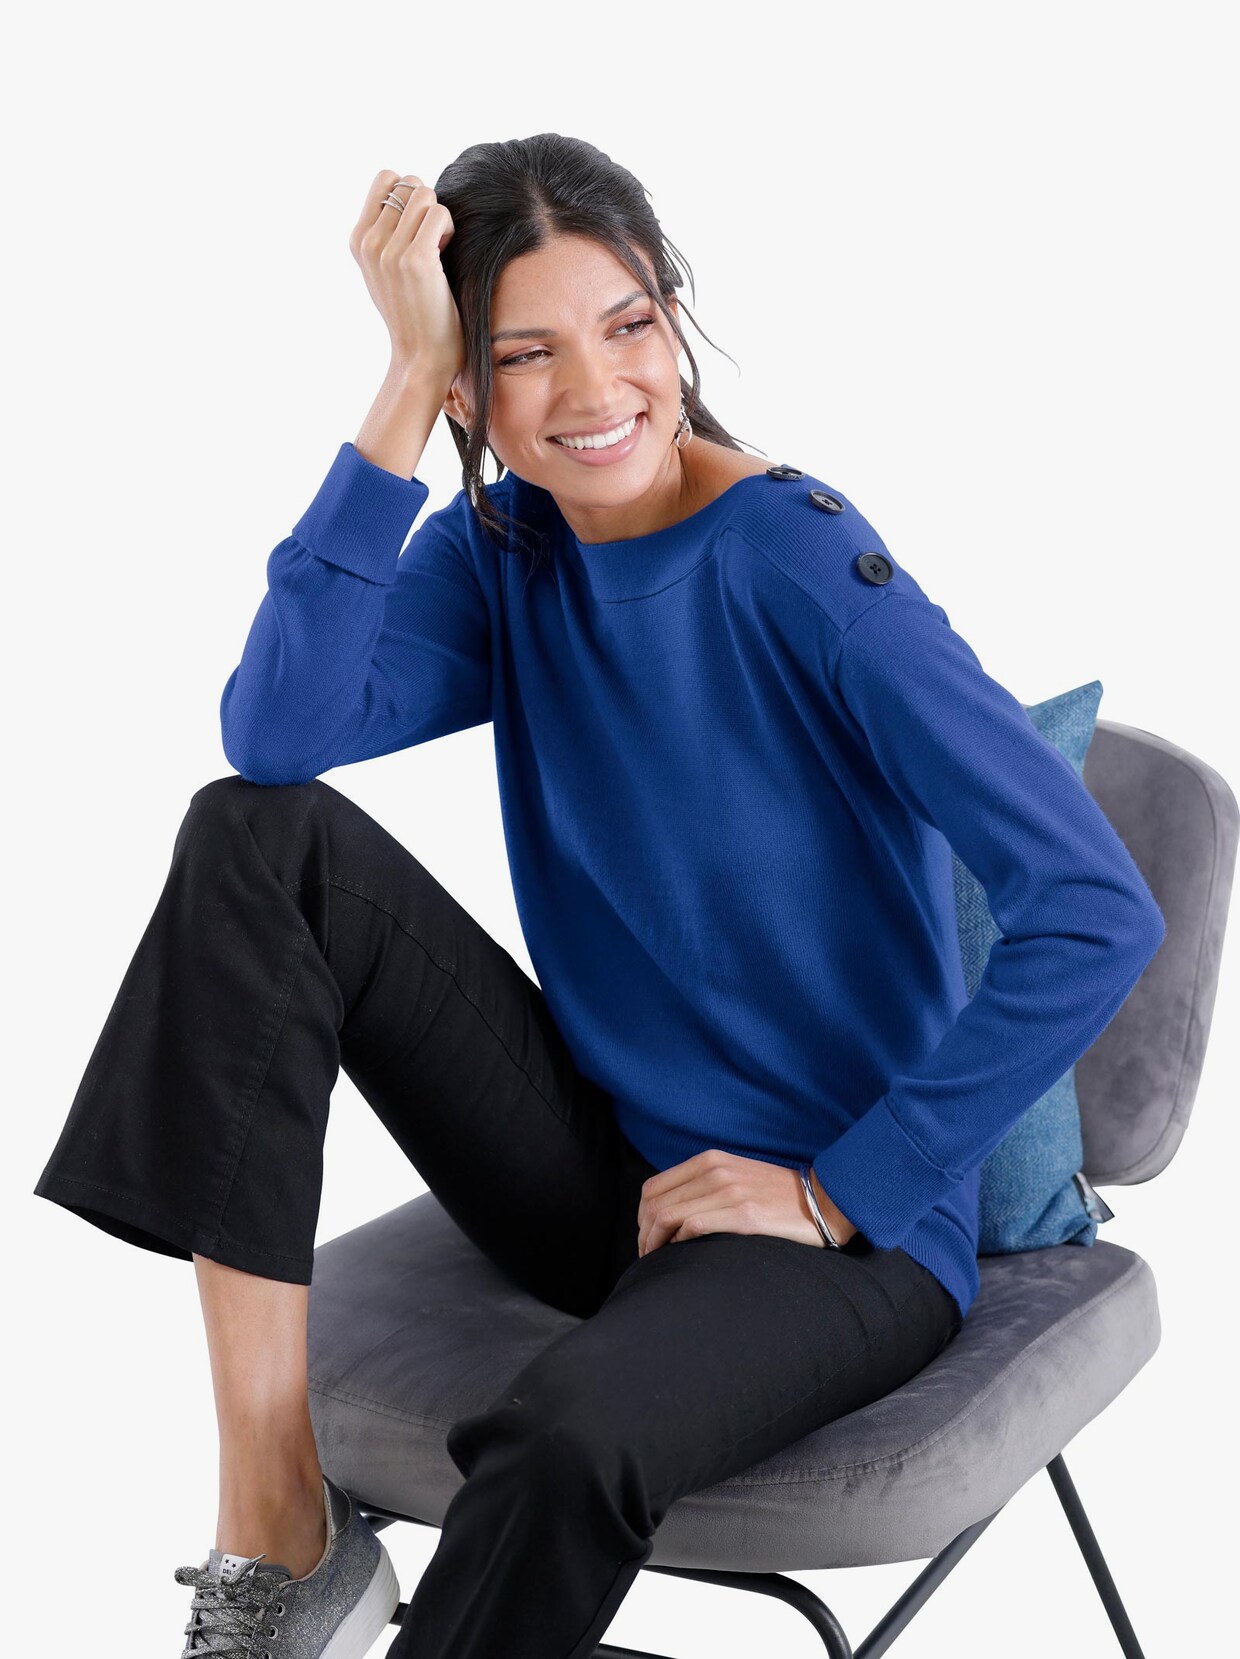 Pullover met lange mouwen - koningsblauw